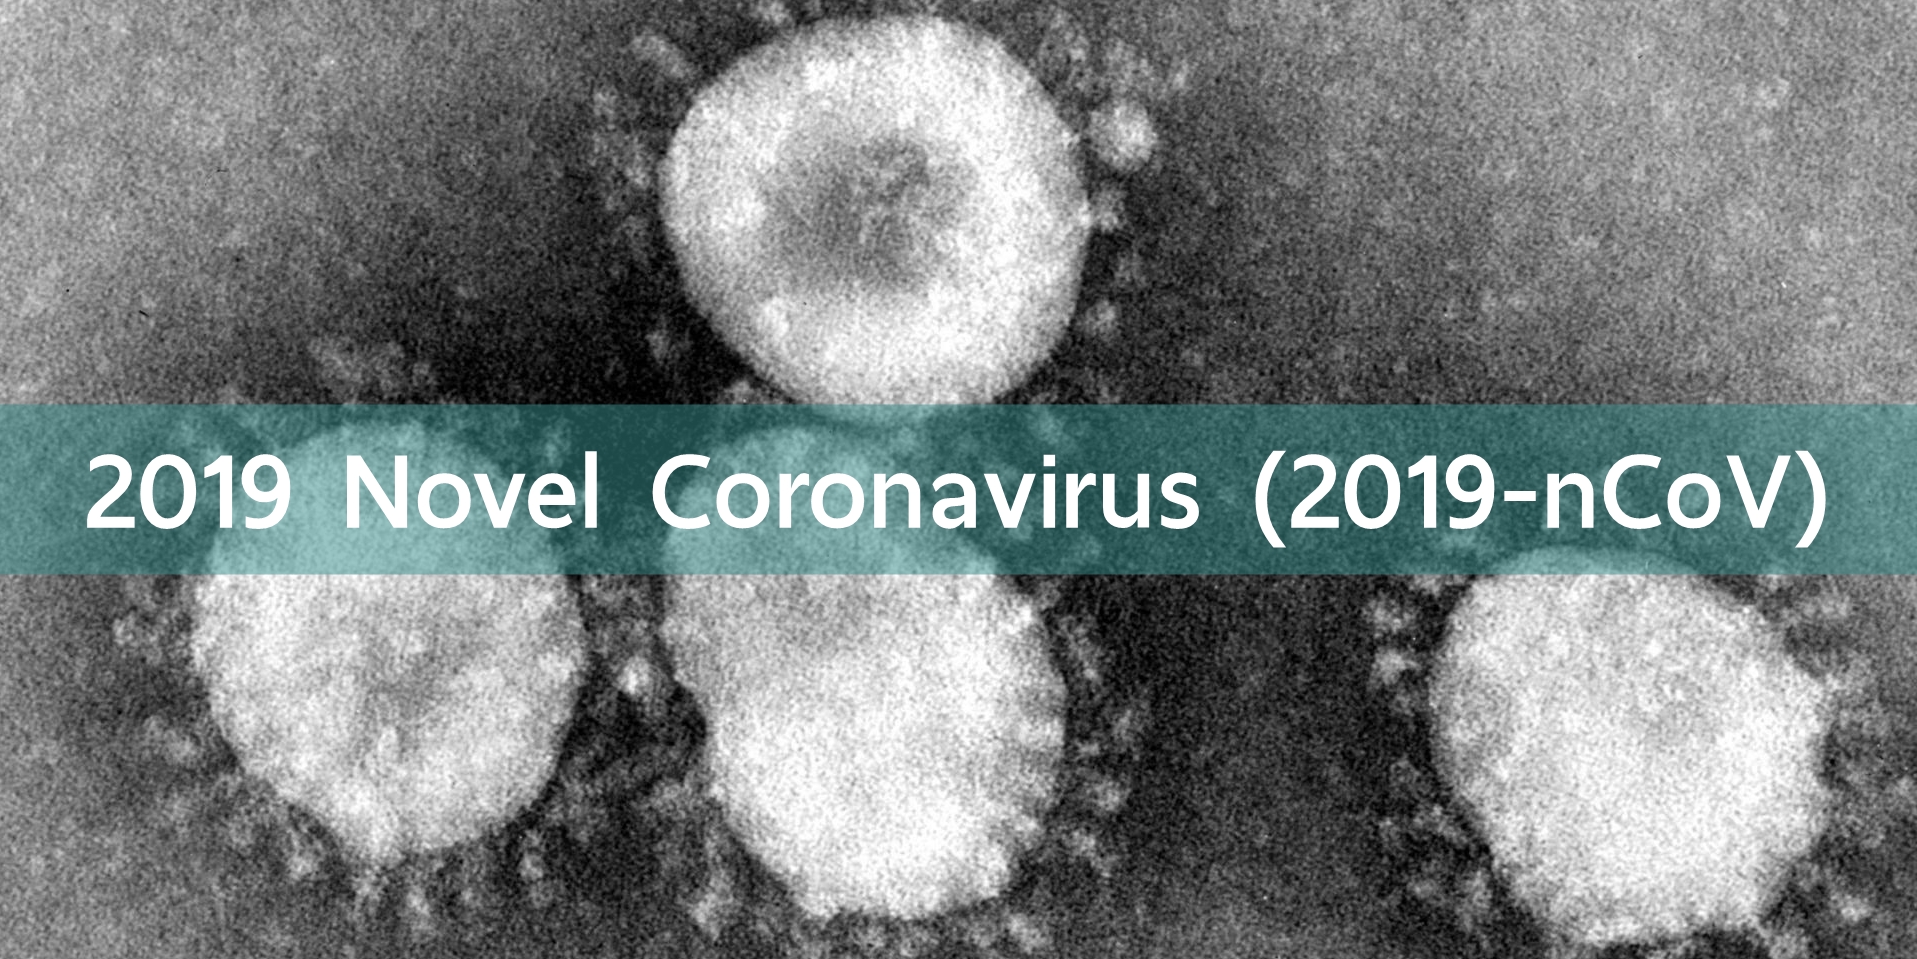 4 ก.พ. ไทยพบผู้ป่วยติดเชื้อไวรัสโคโรนาเพิ่มอีก 6 คน รวมผู้ป่วยสะสม 25 คน